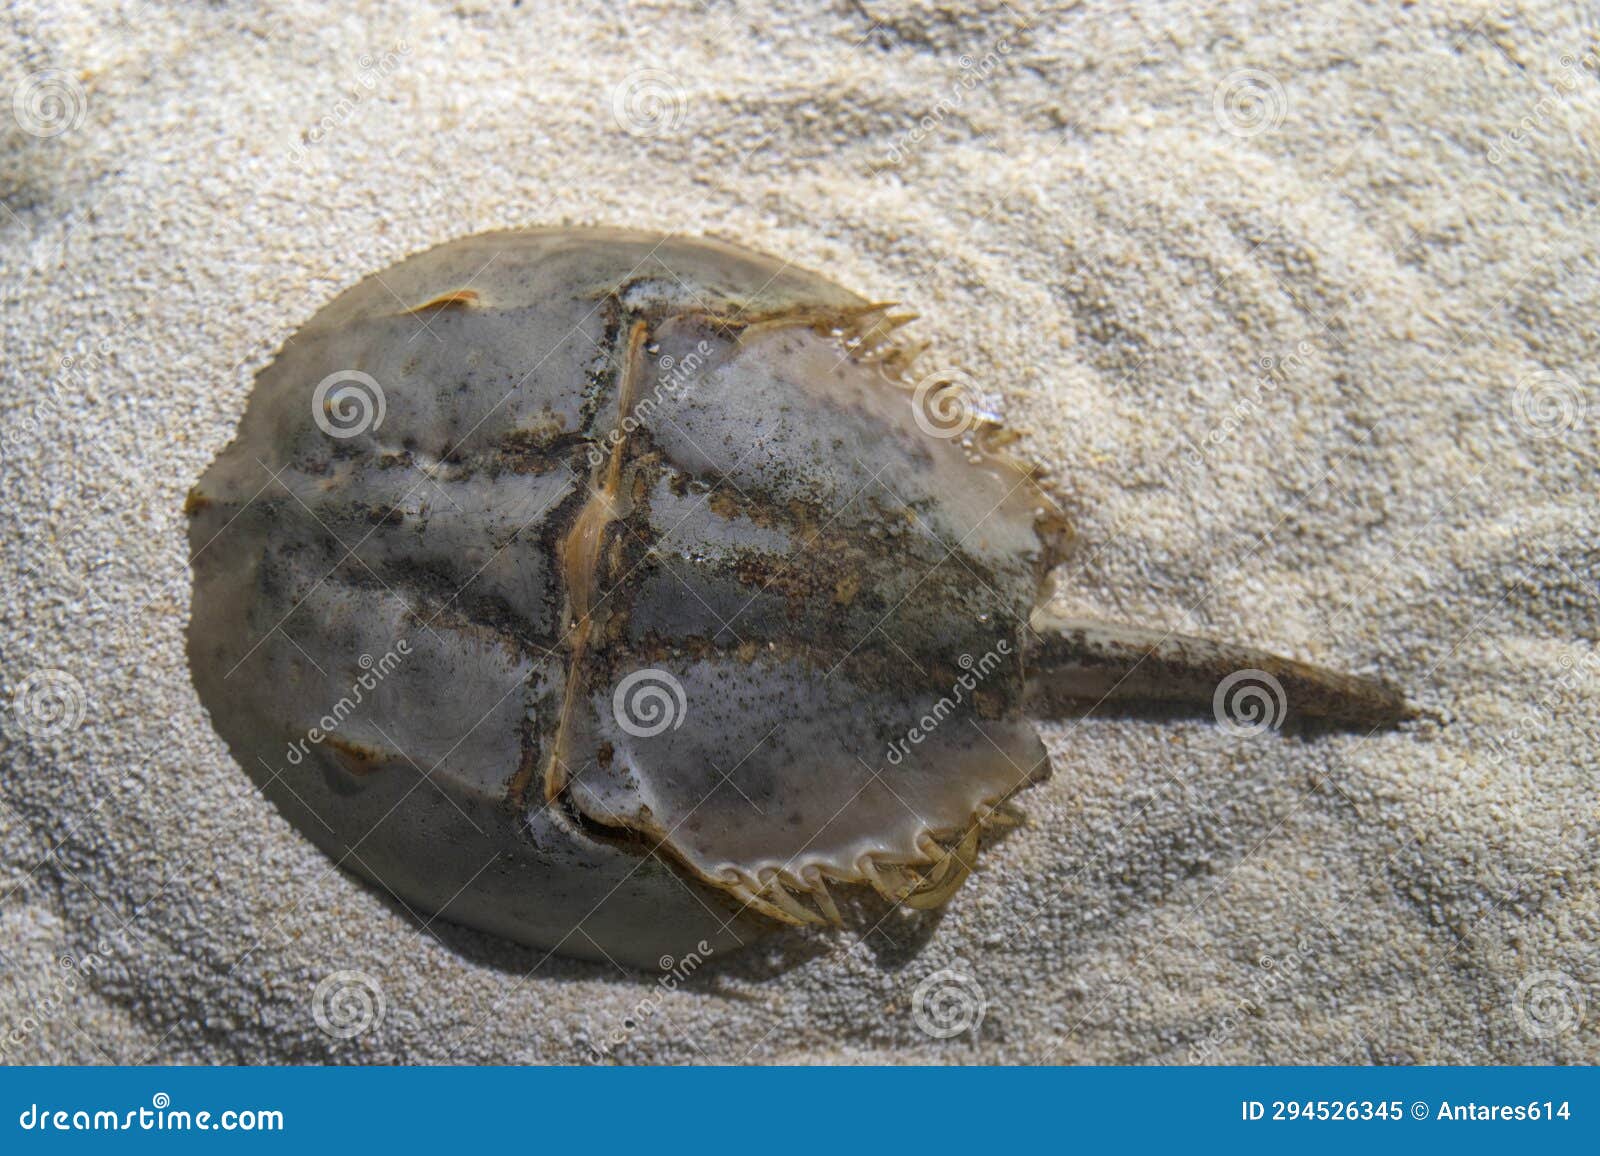 atlantic horseshoe crab aka limulus polyphemus